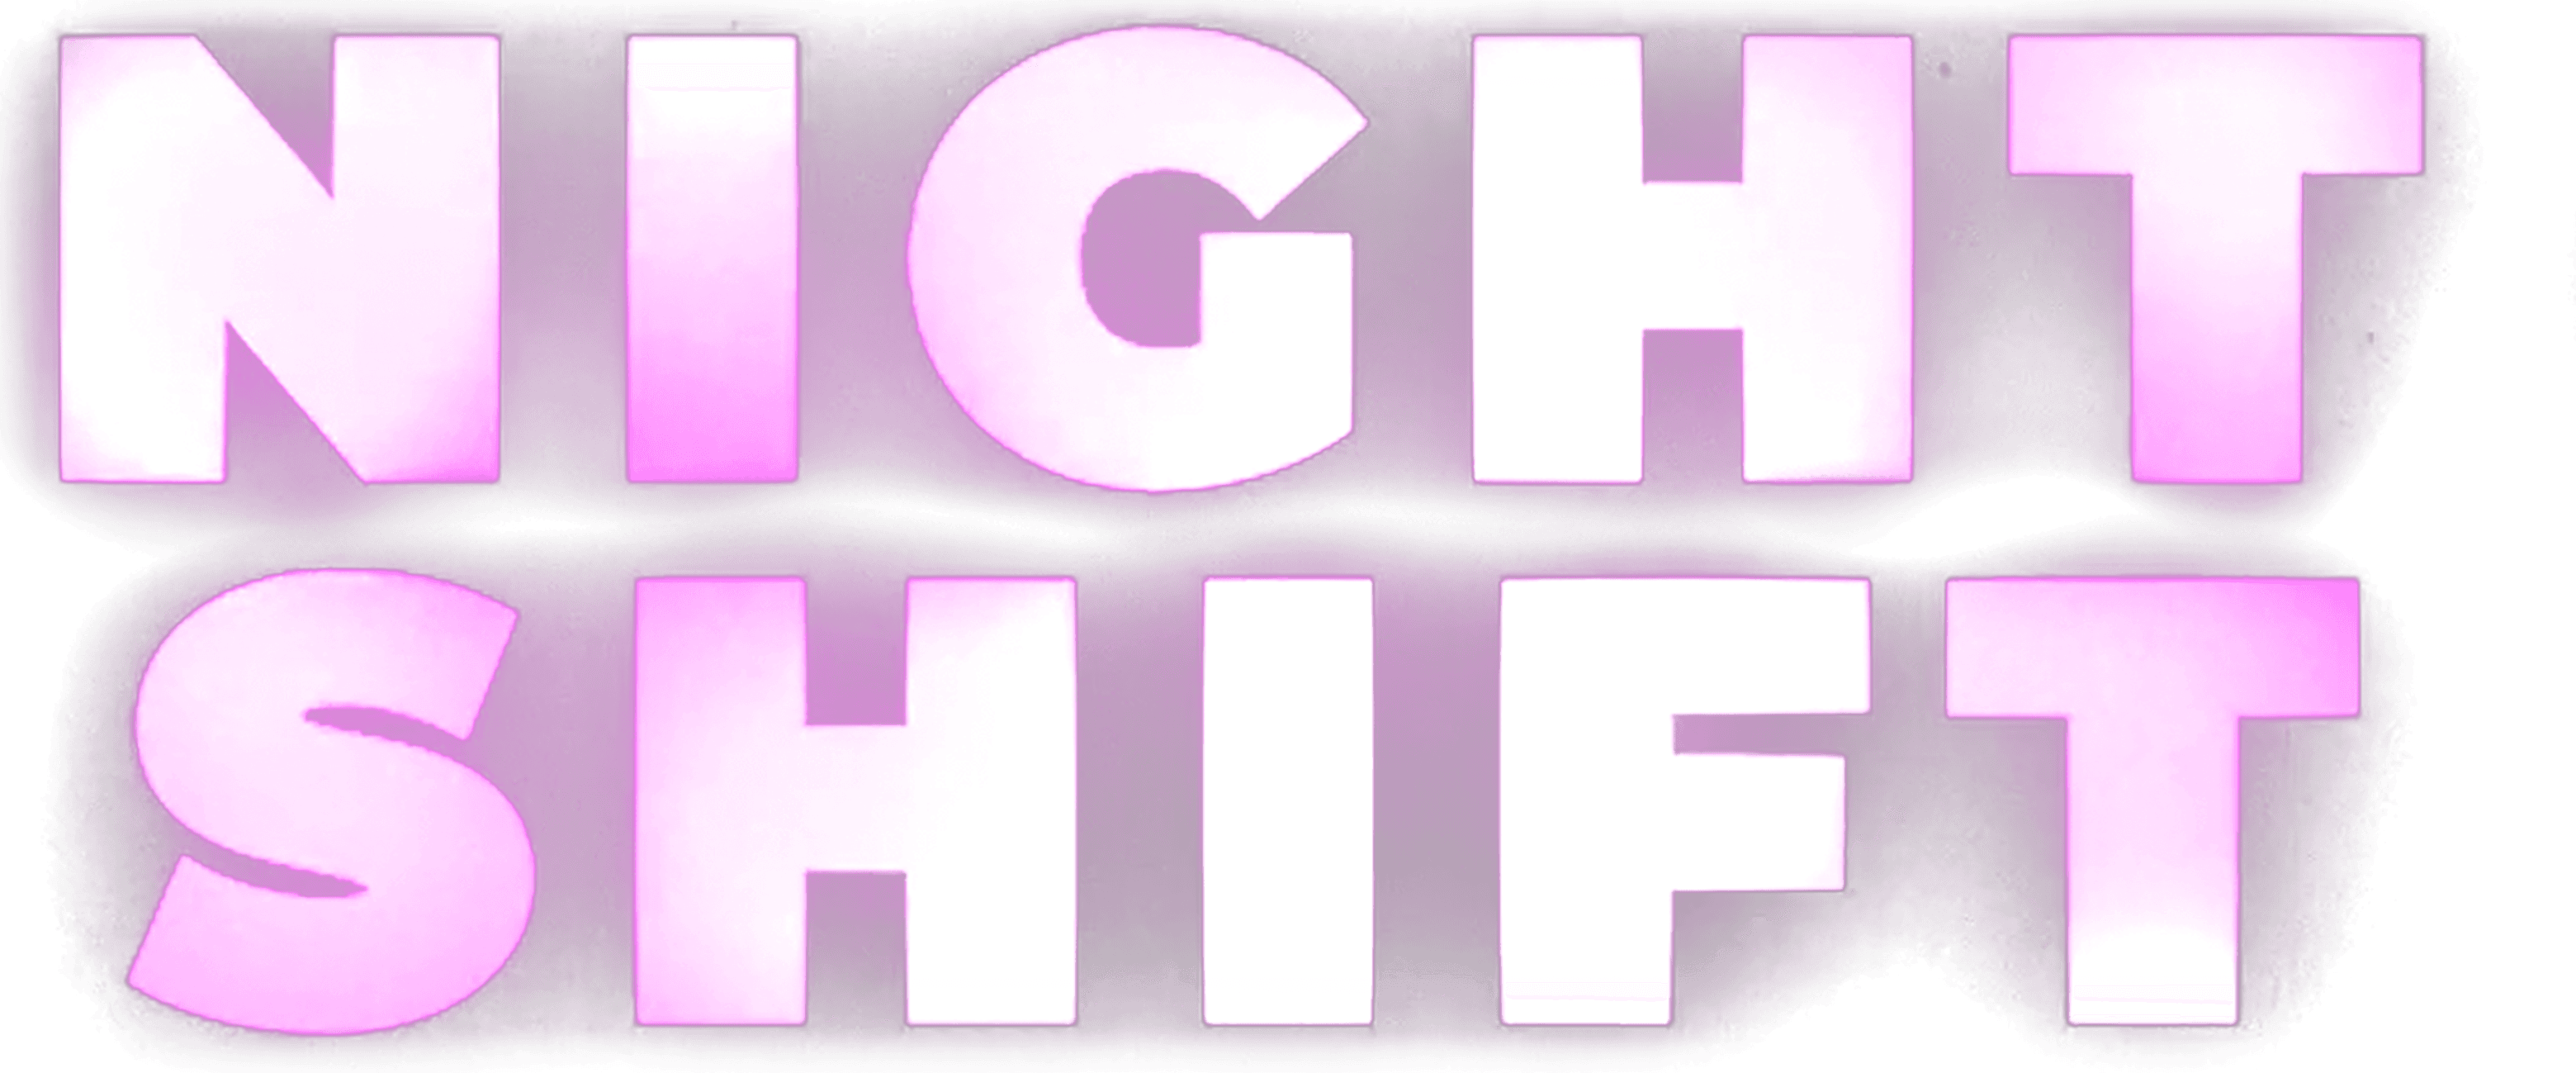 Night Shift logo